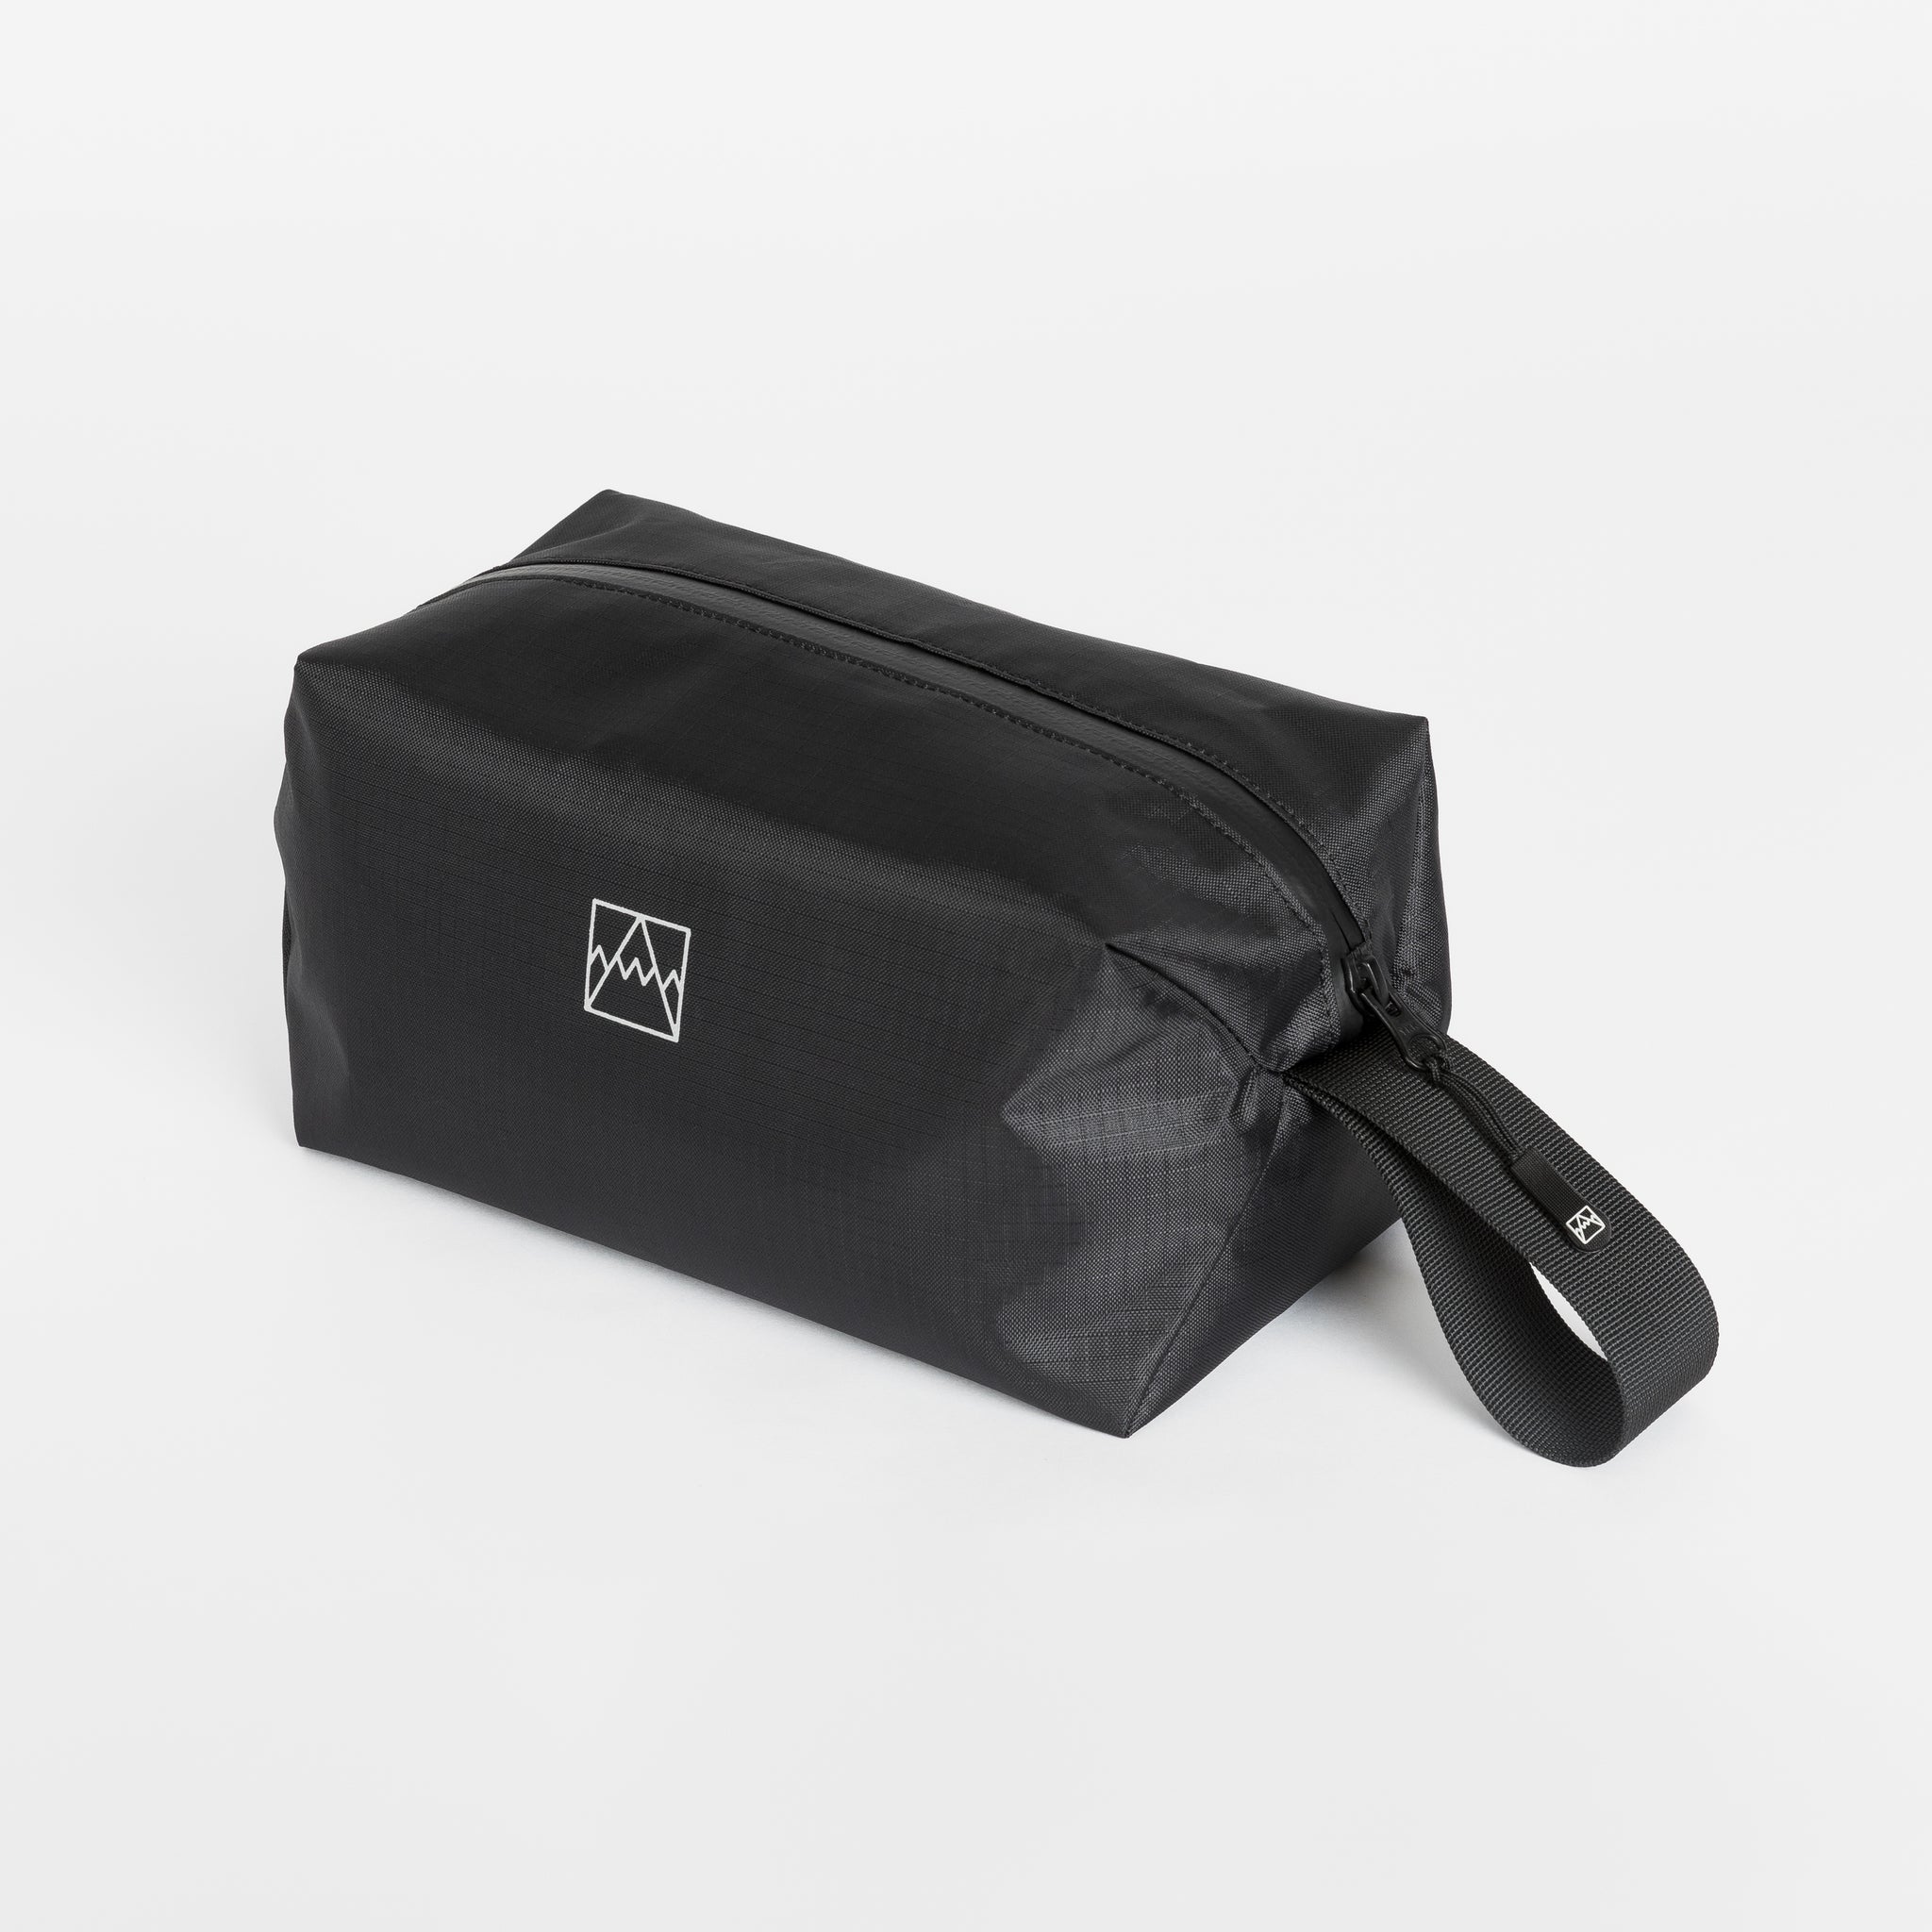 The Wash Bag – Stubble & Co